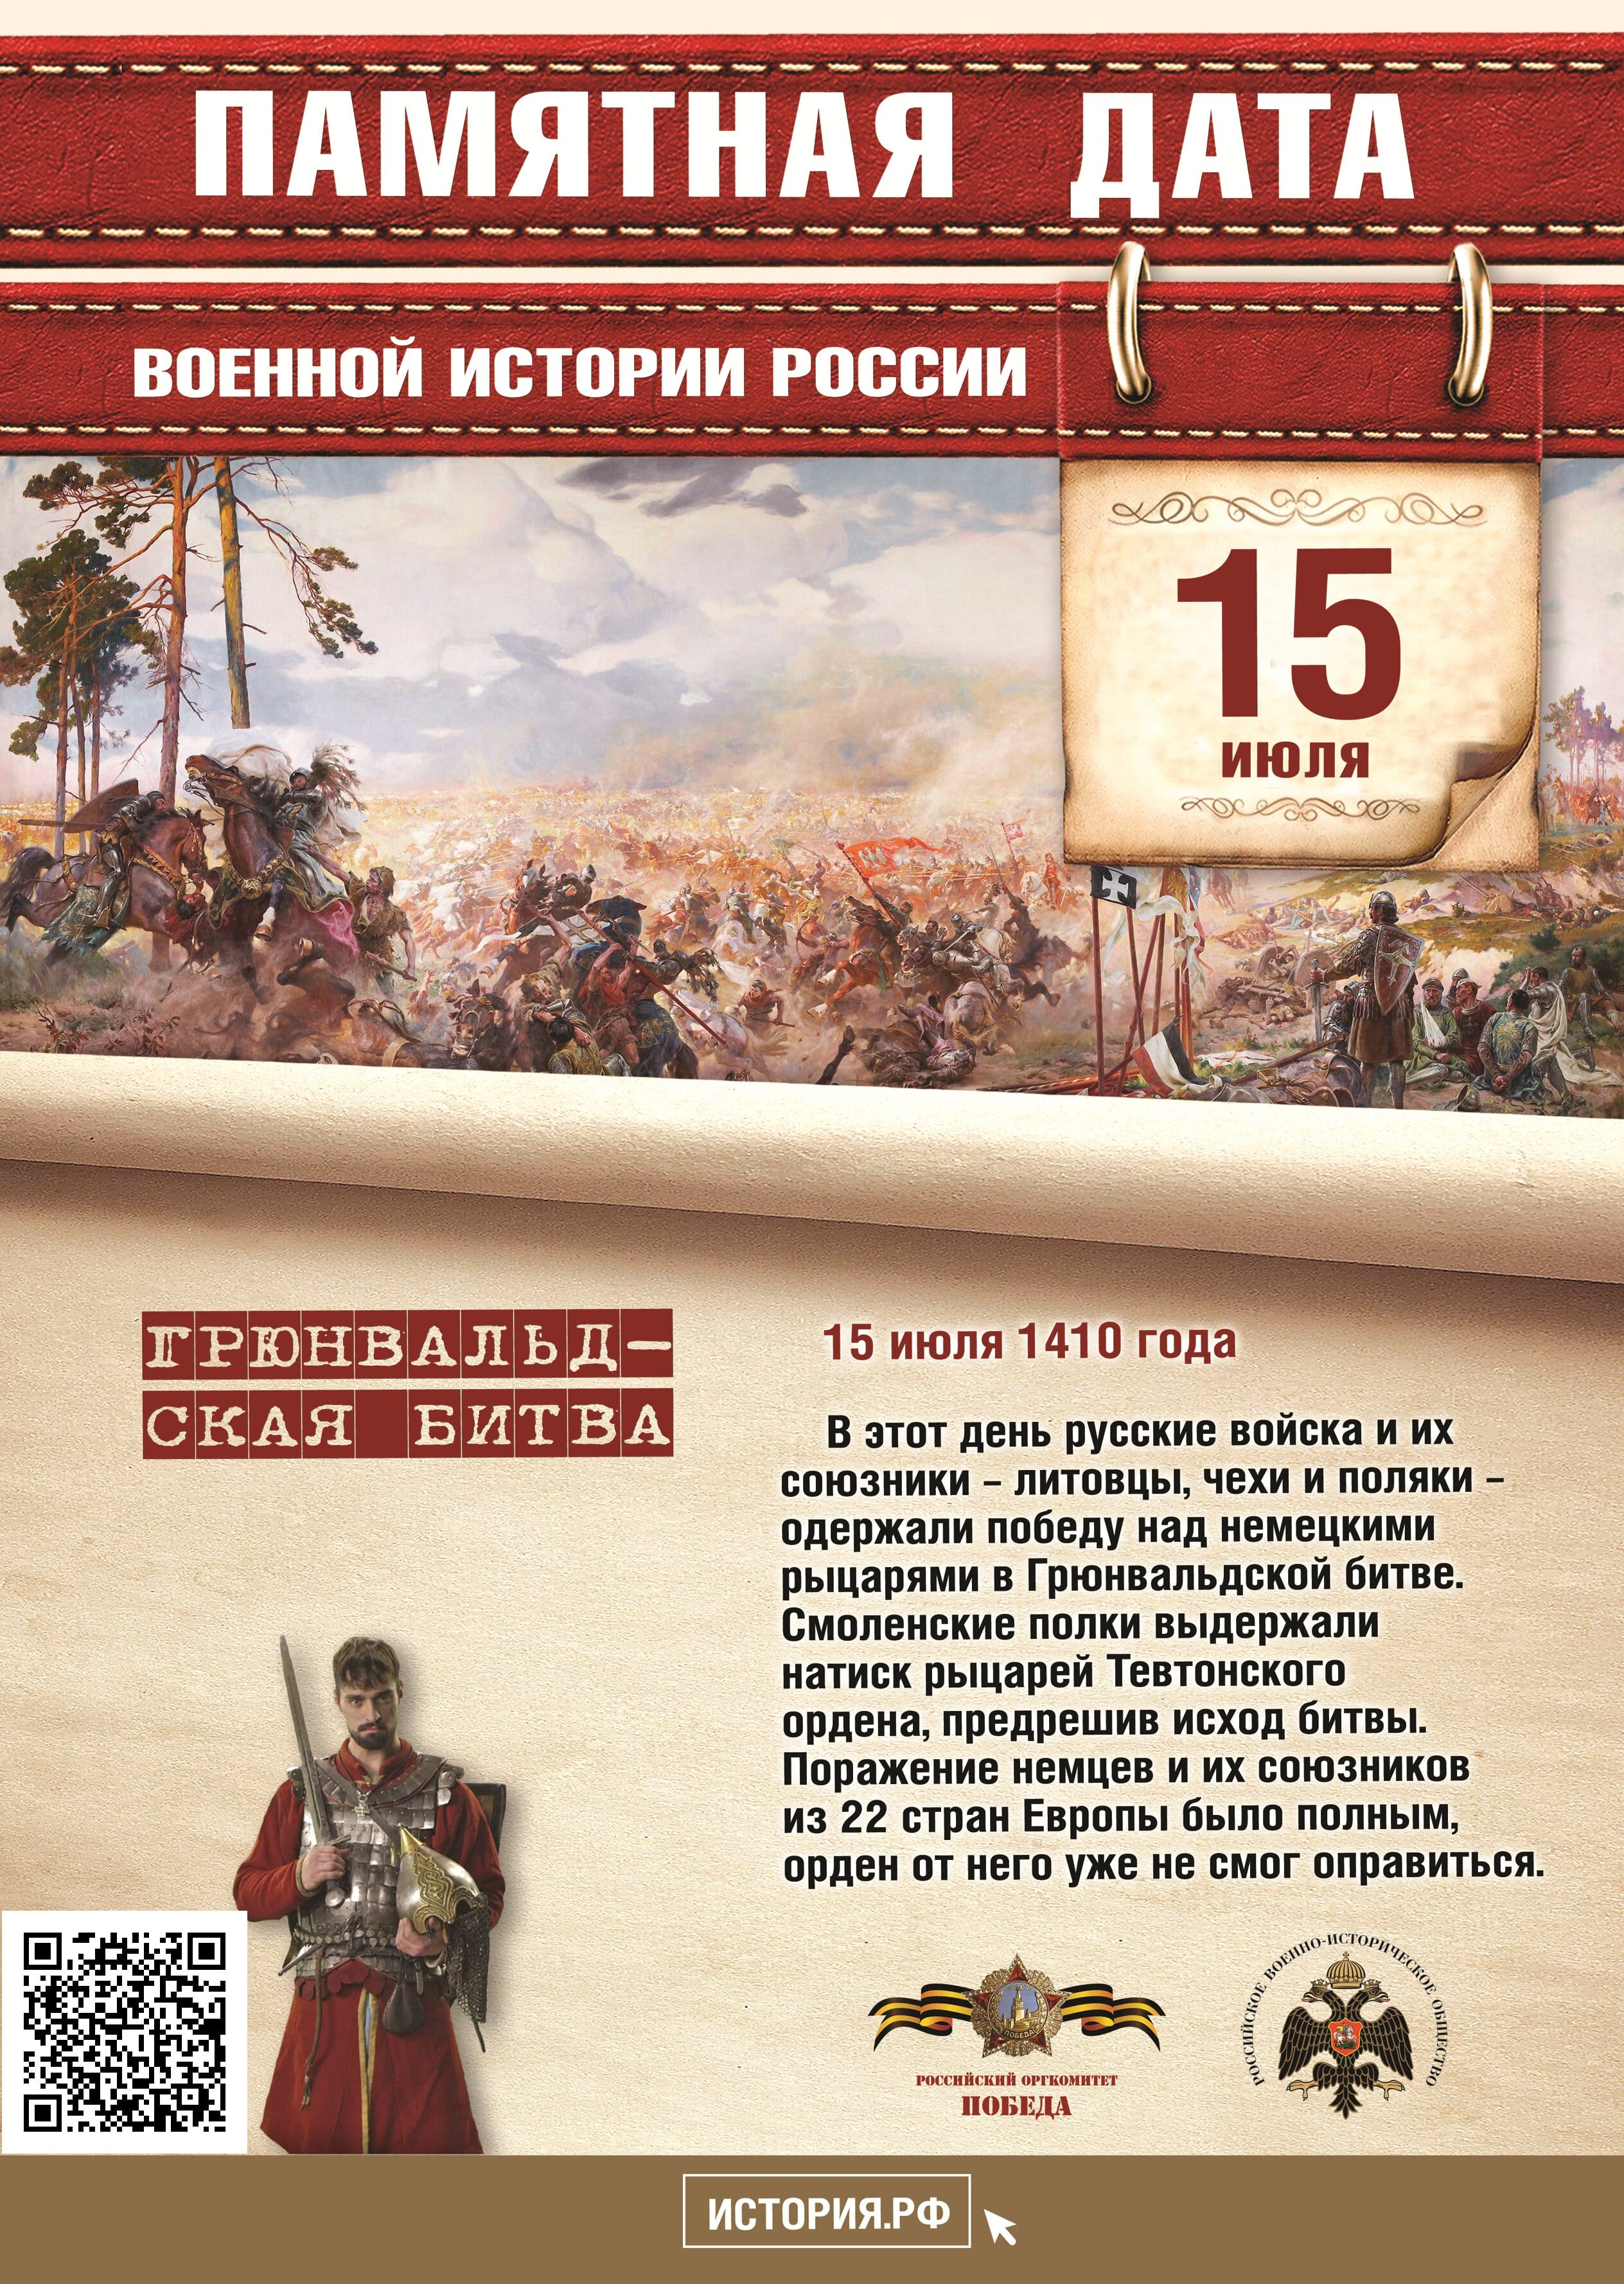 Памятная дата в истории России